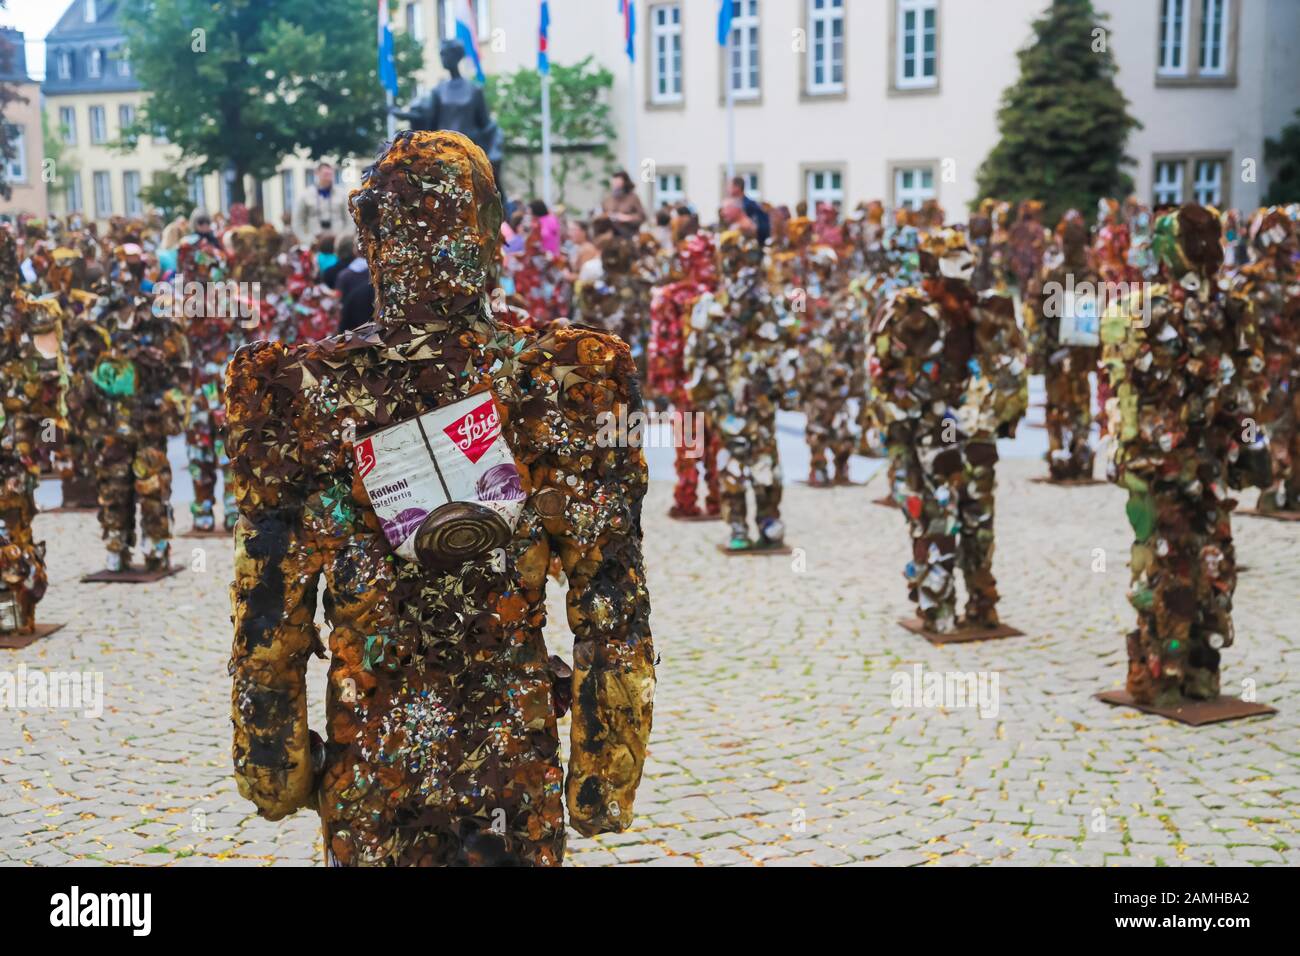 Luxembourg, Luxembourg - 12 septembre 2014 : Les gens de l'Armée de corbeille  Corbeille déchets dangereux de l'artiste allemand Schult Photo Stock - Alamy